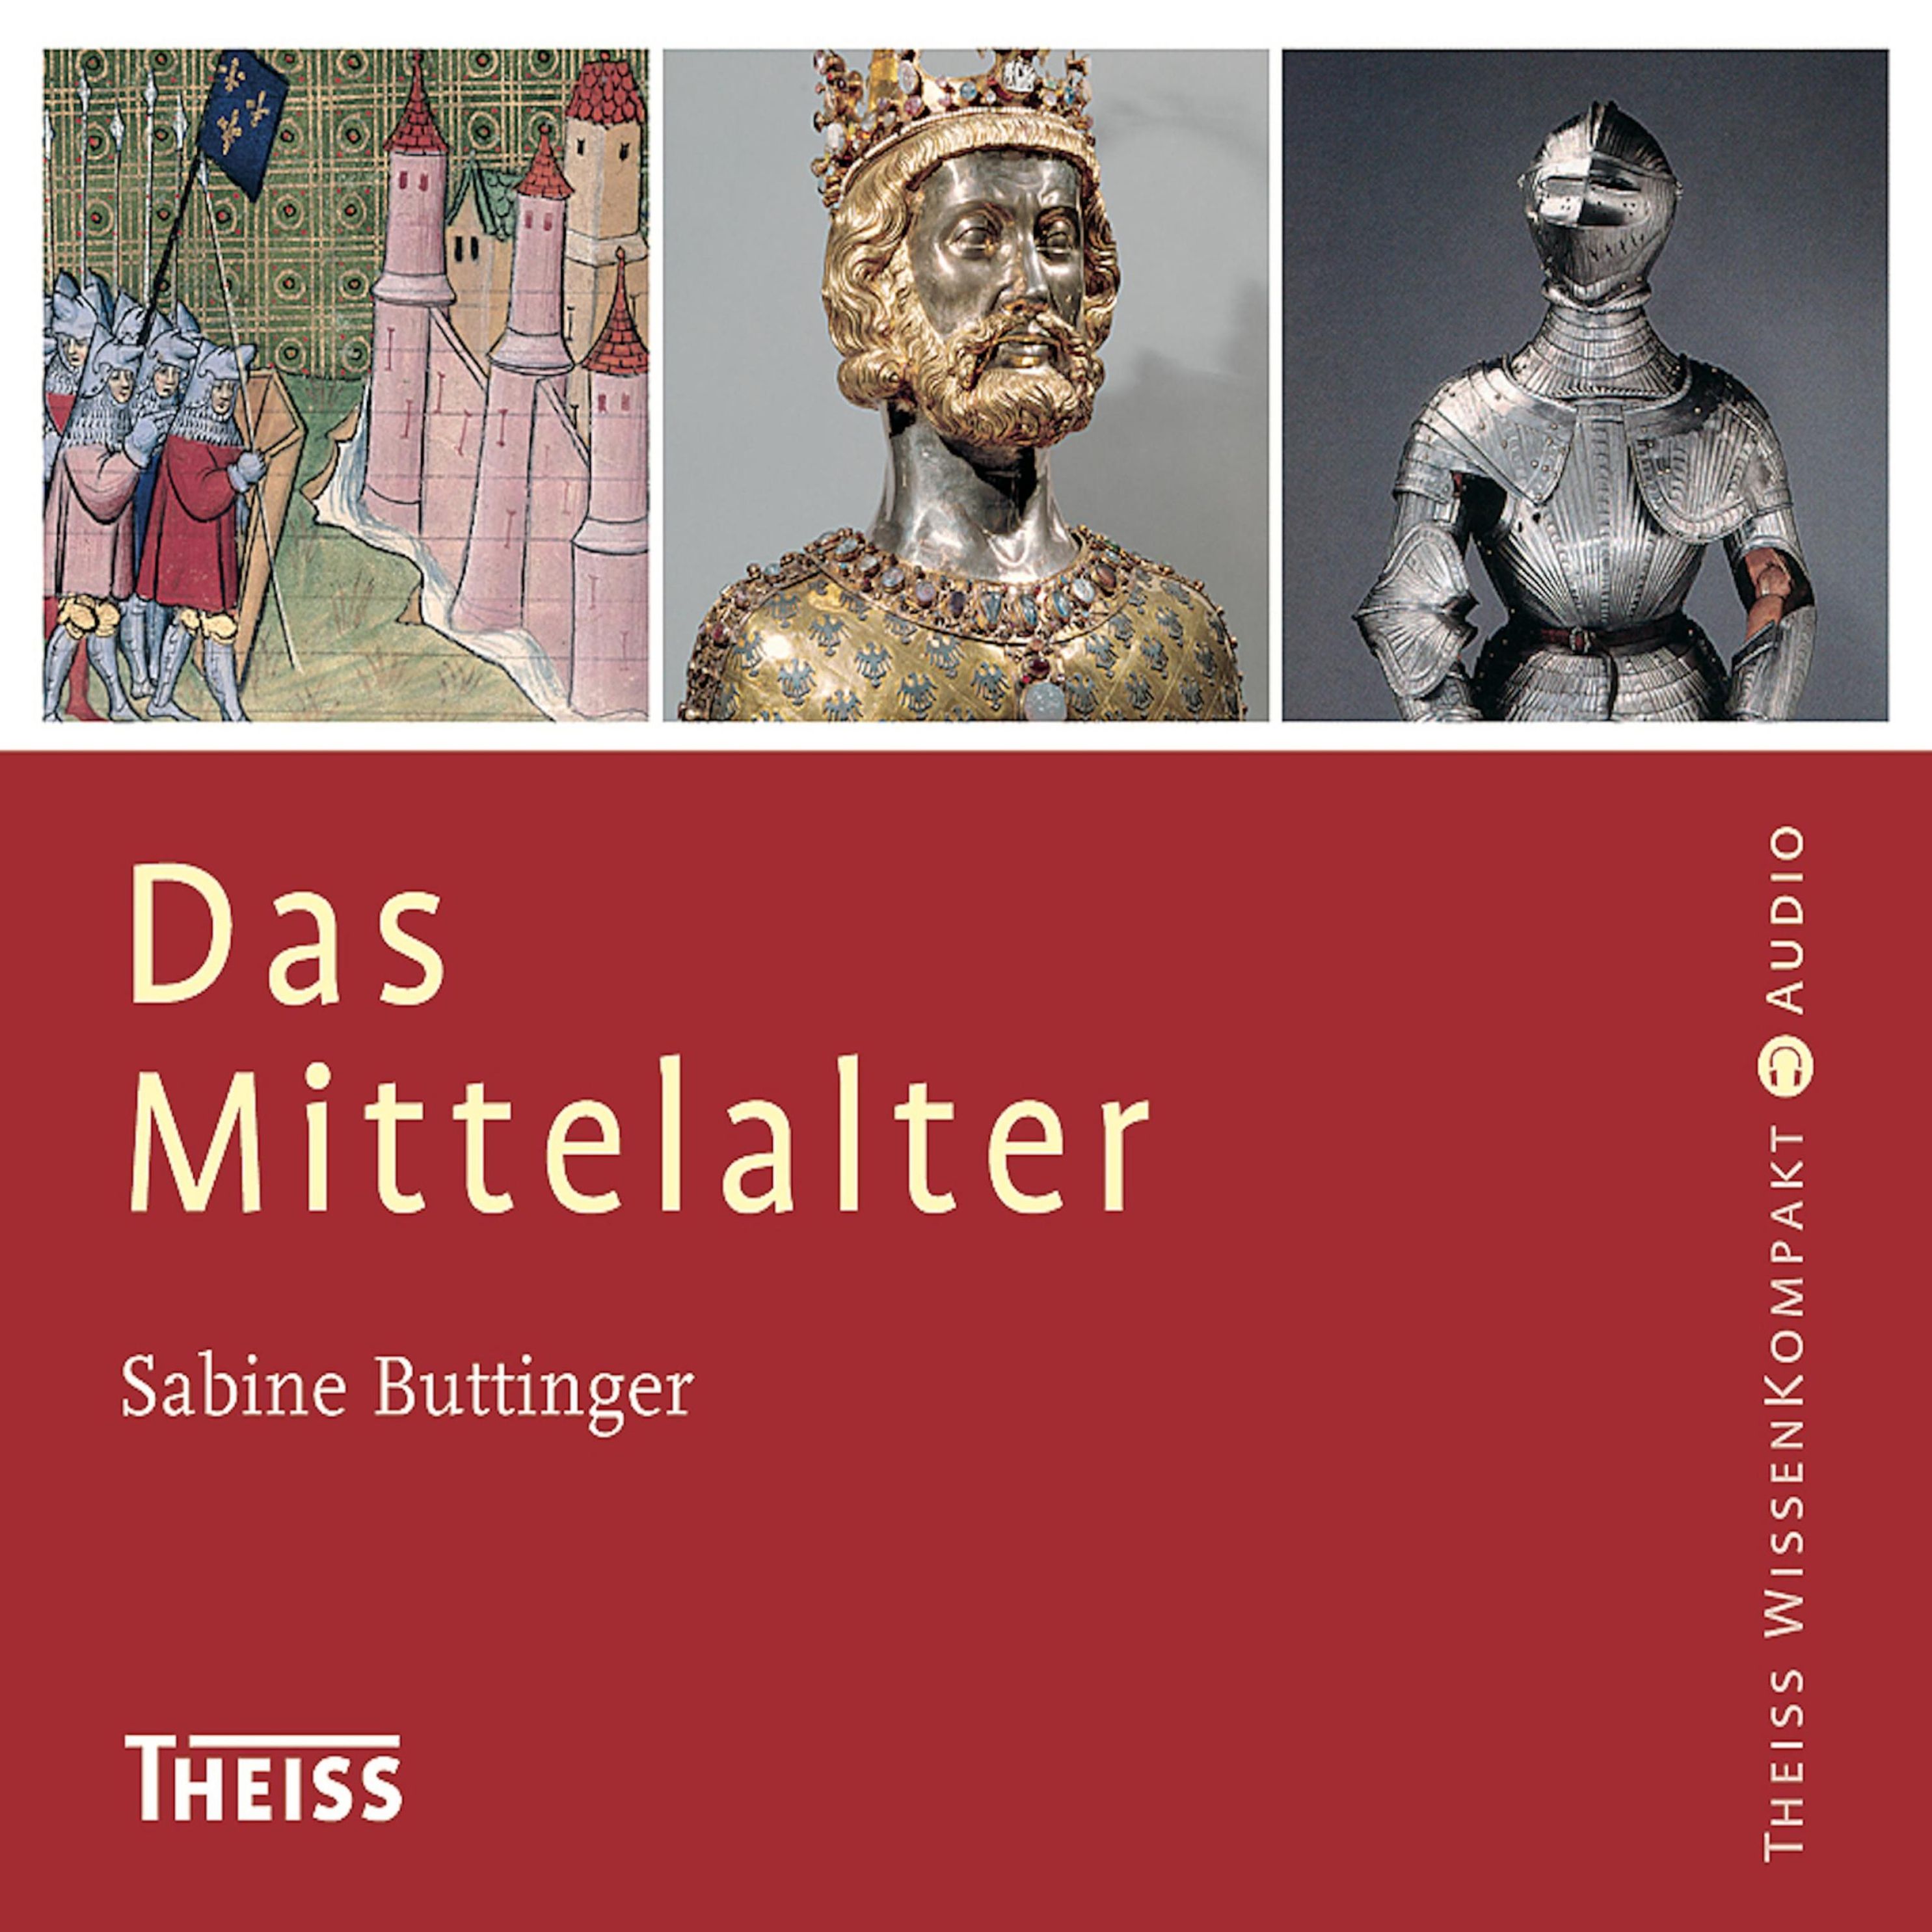 Das Mittelalter Hörbuch sicher downloaden bei Weltbild.at